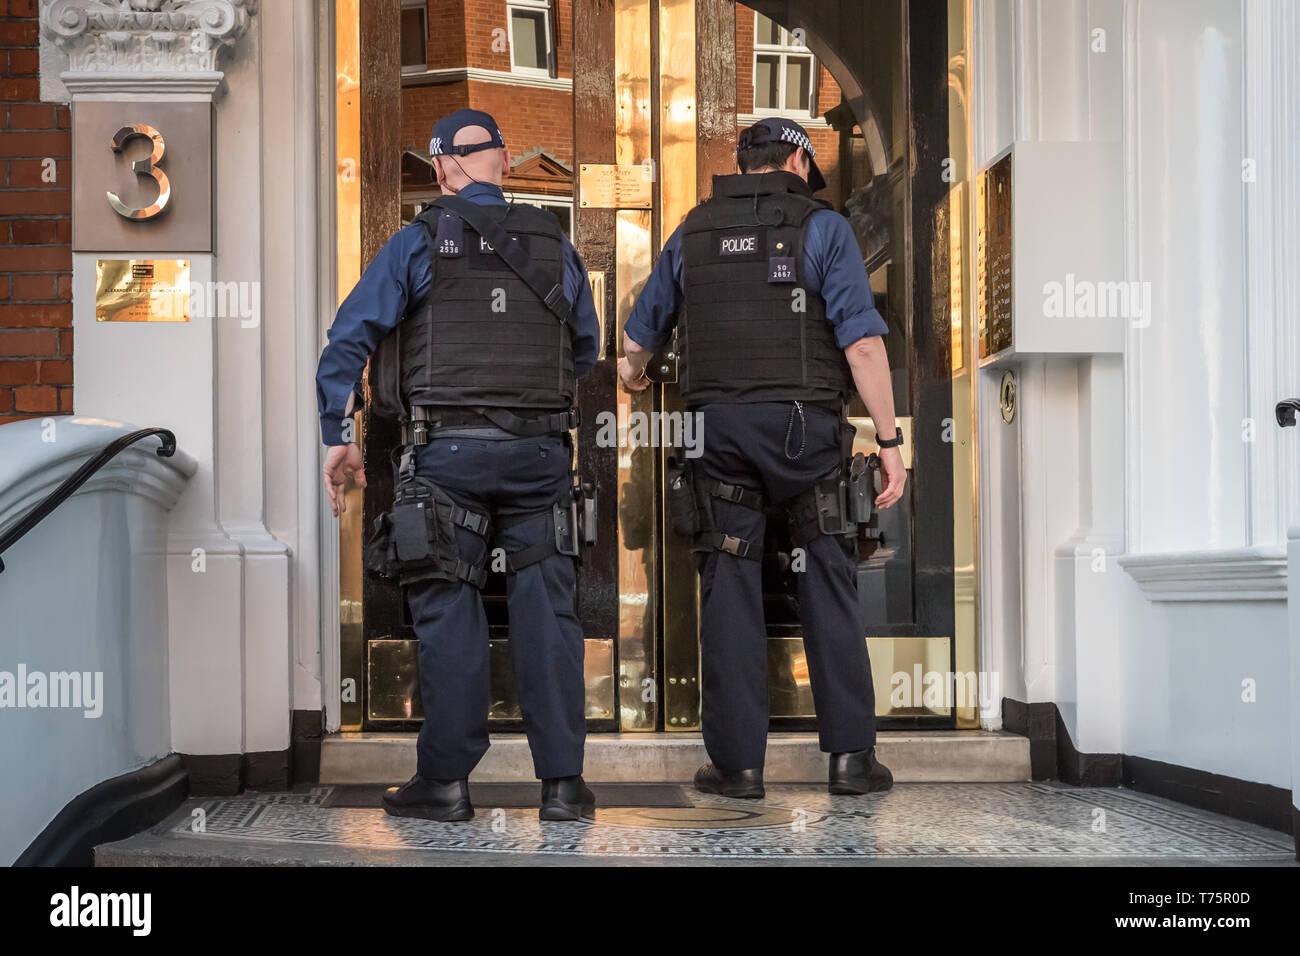 Met Polizei gesehen, die Eingabe der ecuadorianischen Botschaft in Knightsbridge am Tag der gezwungen, Julian Assange Räumung und verhaften. London, Großbritannien. Stockfoto